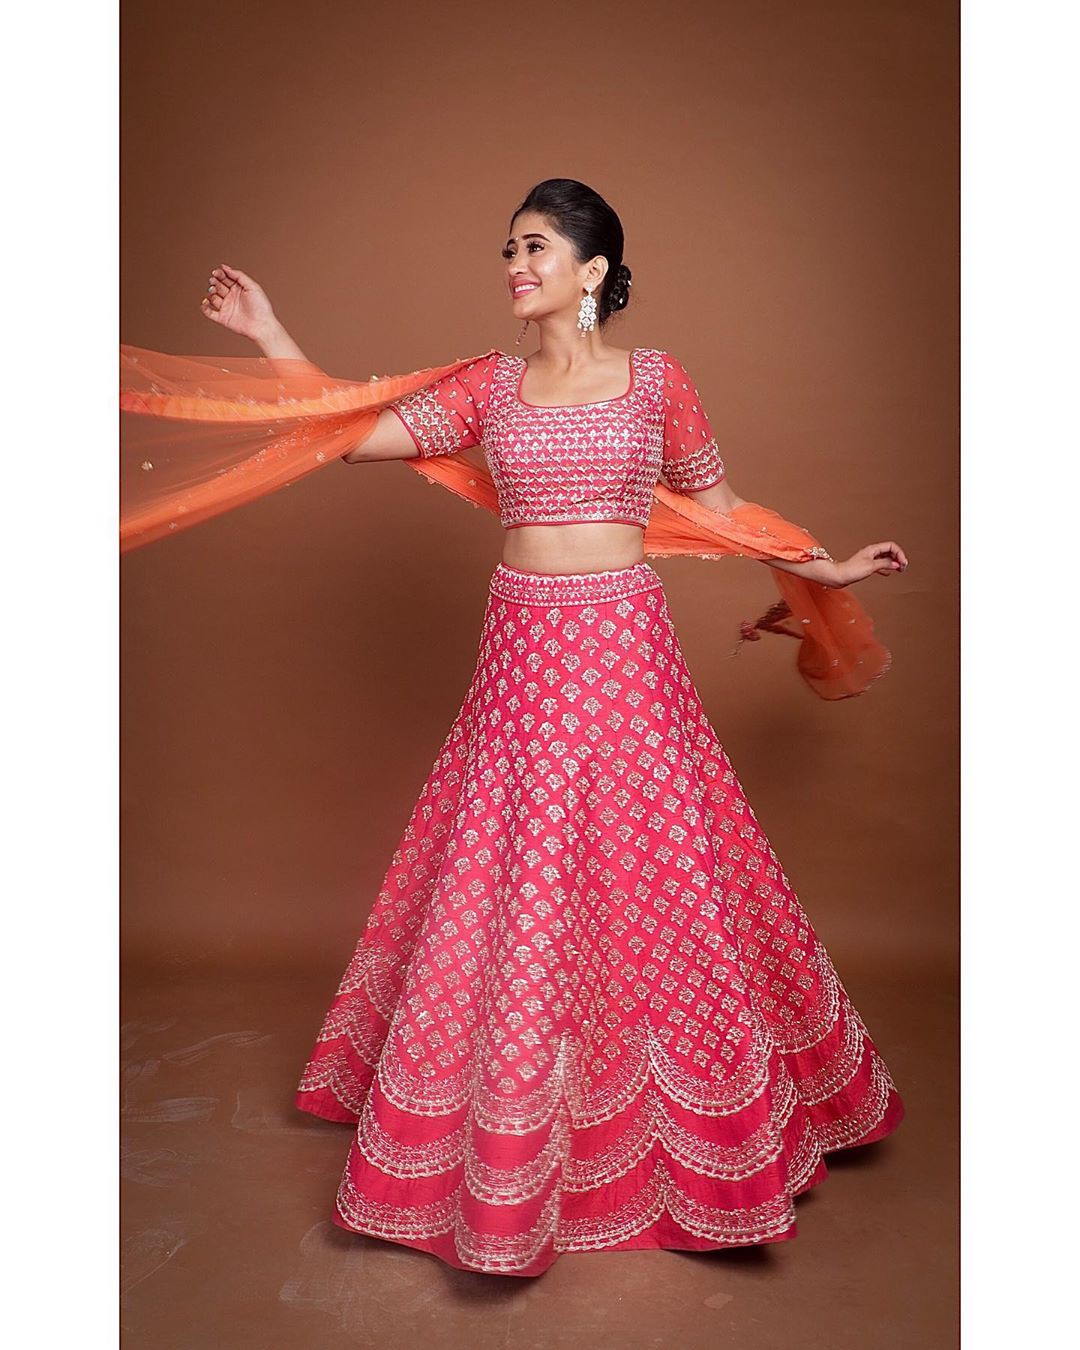 Vestido magenta y naranja ropa formal, bordado.: Traje Magenta Y Naranja,  Shivangi Joshi Instagram  